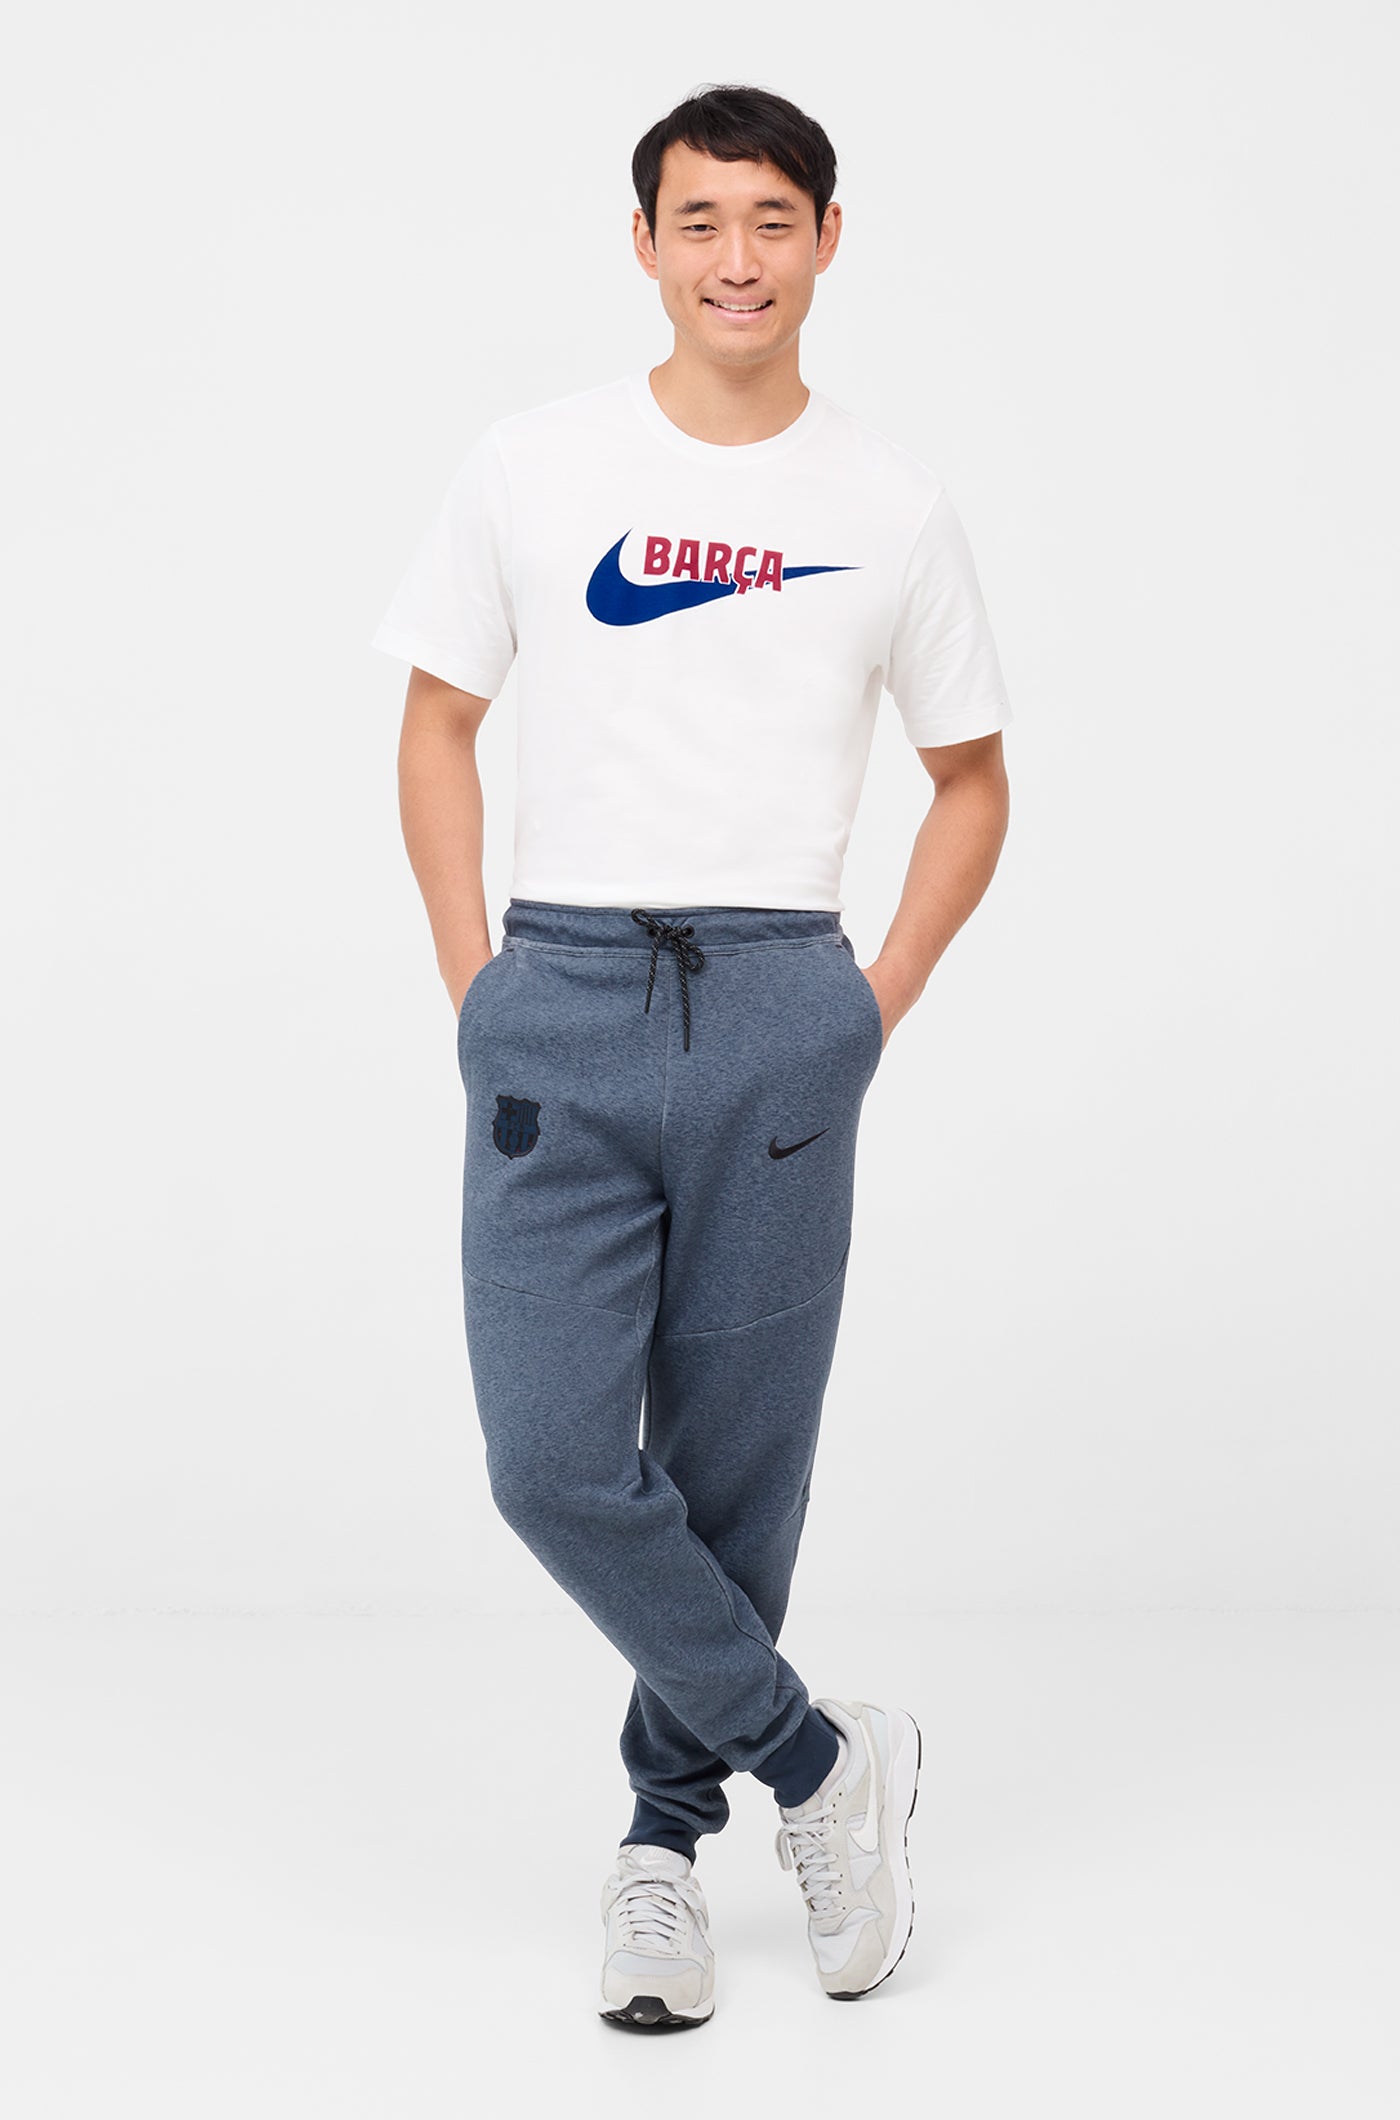 Nike Grey Tech Fleece Pants – Outlined